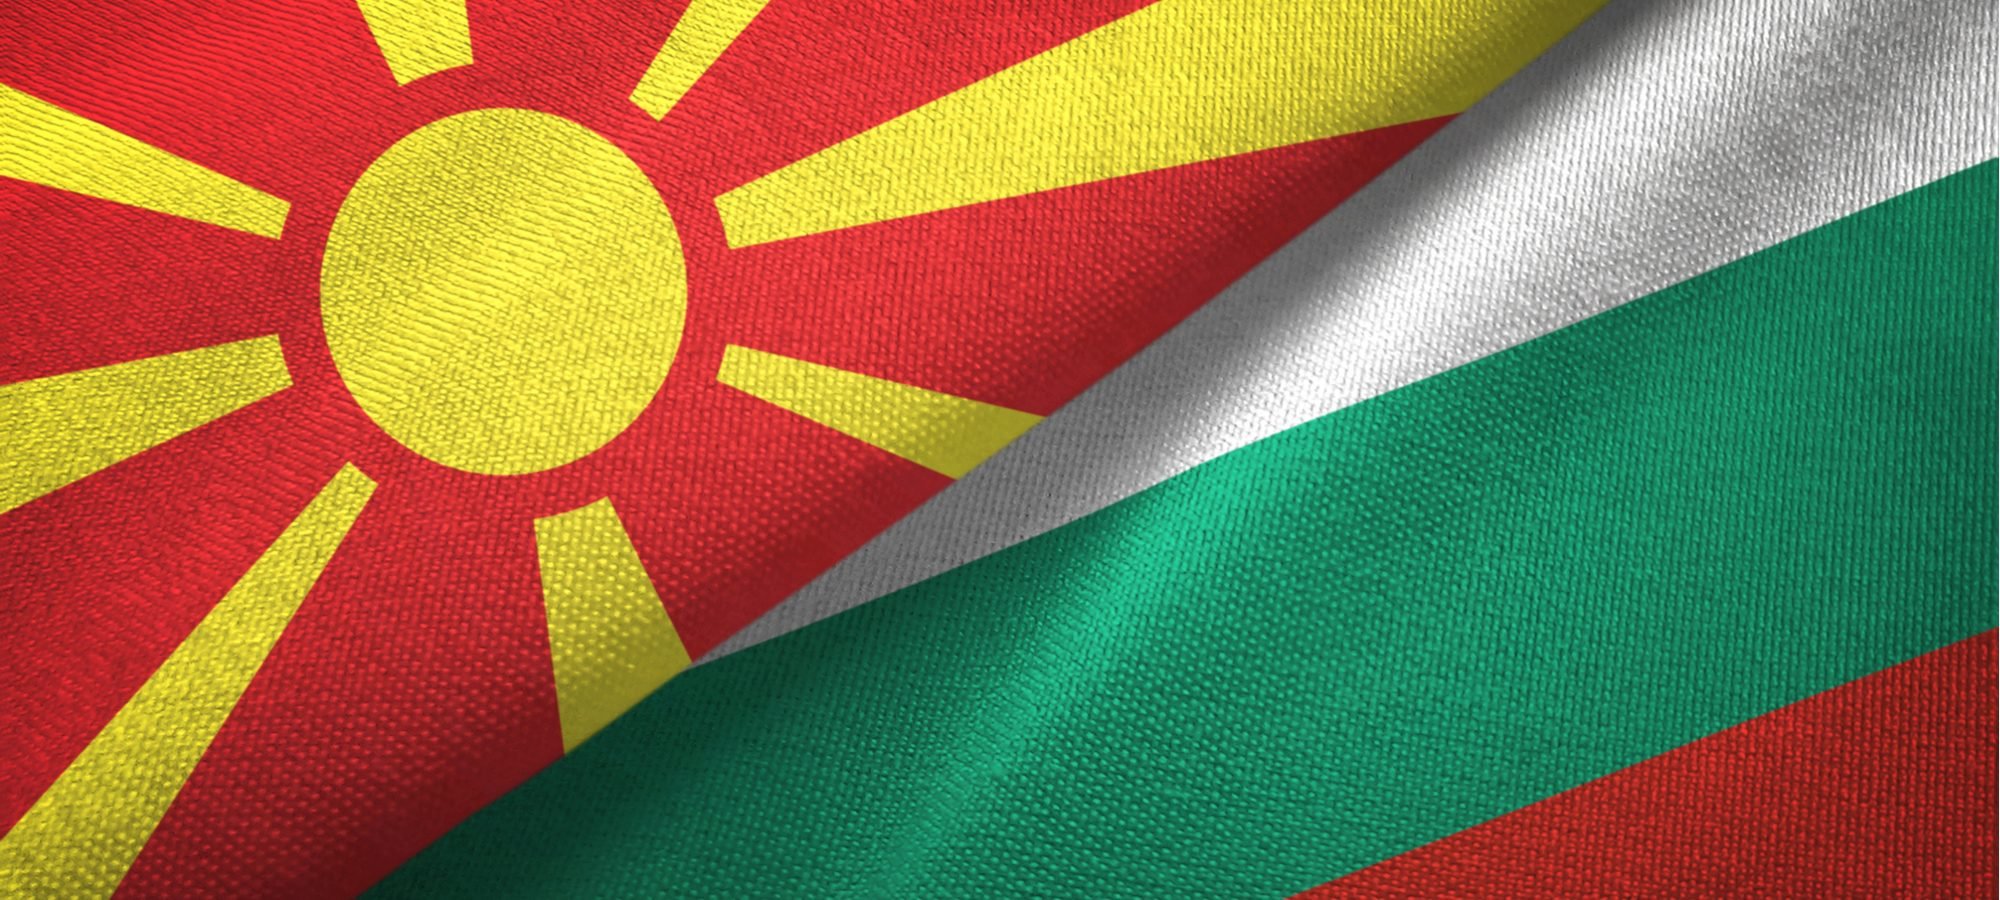 България ще признае македонския език и македонската идентичност ако Северна